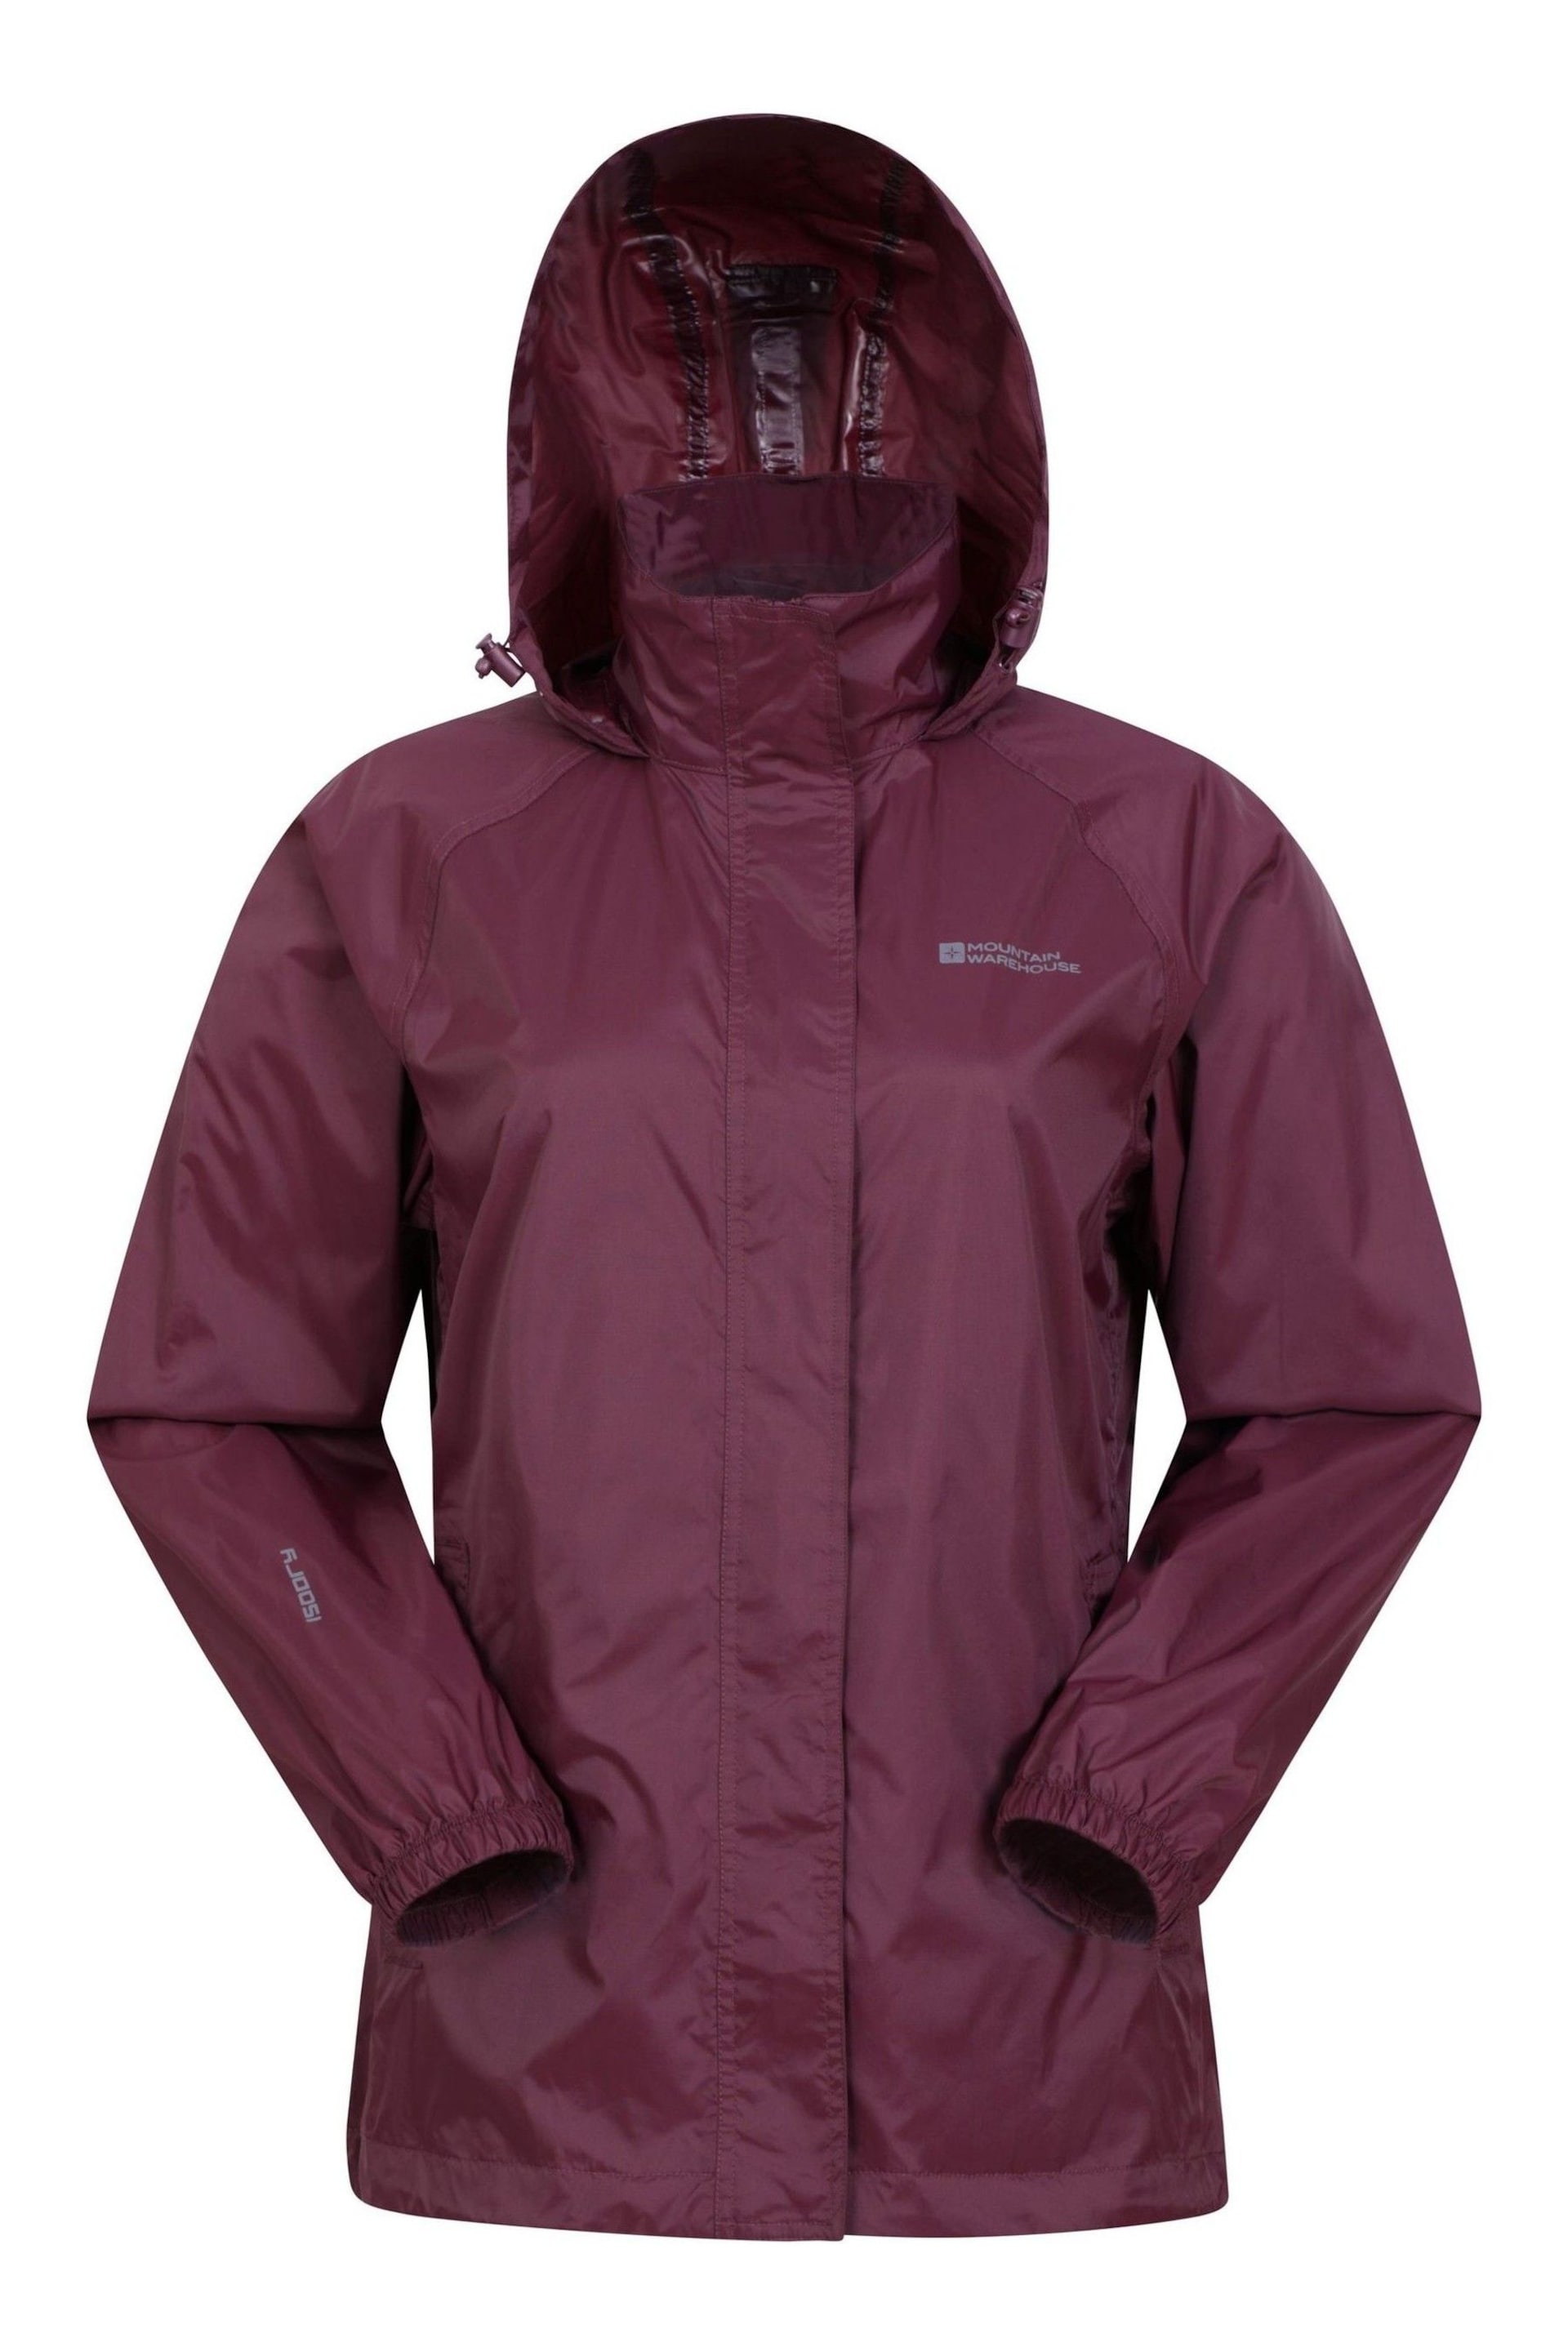 Mountain Warehouse Purple Womens Pakka Waterproof Jacket - Image 3 of 5